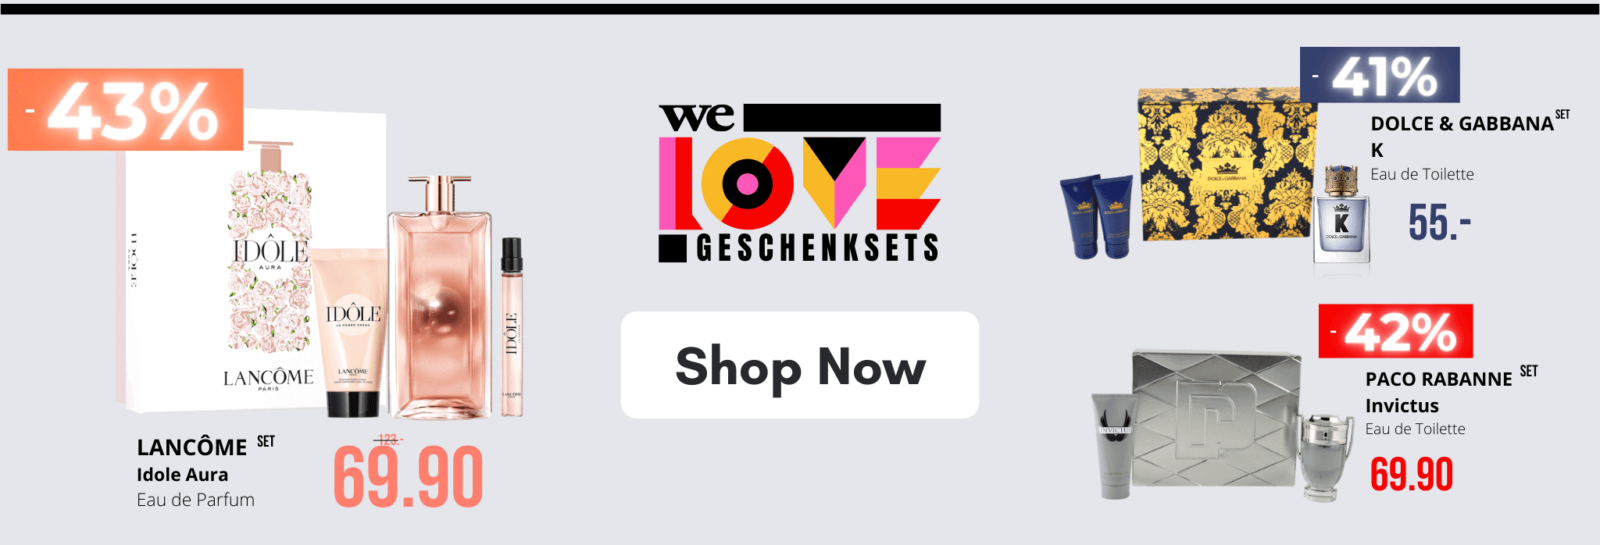 We Love Geschenksets - FreeShop Perfumes & Cosmetics